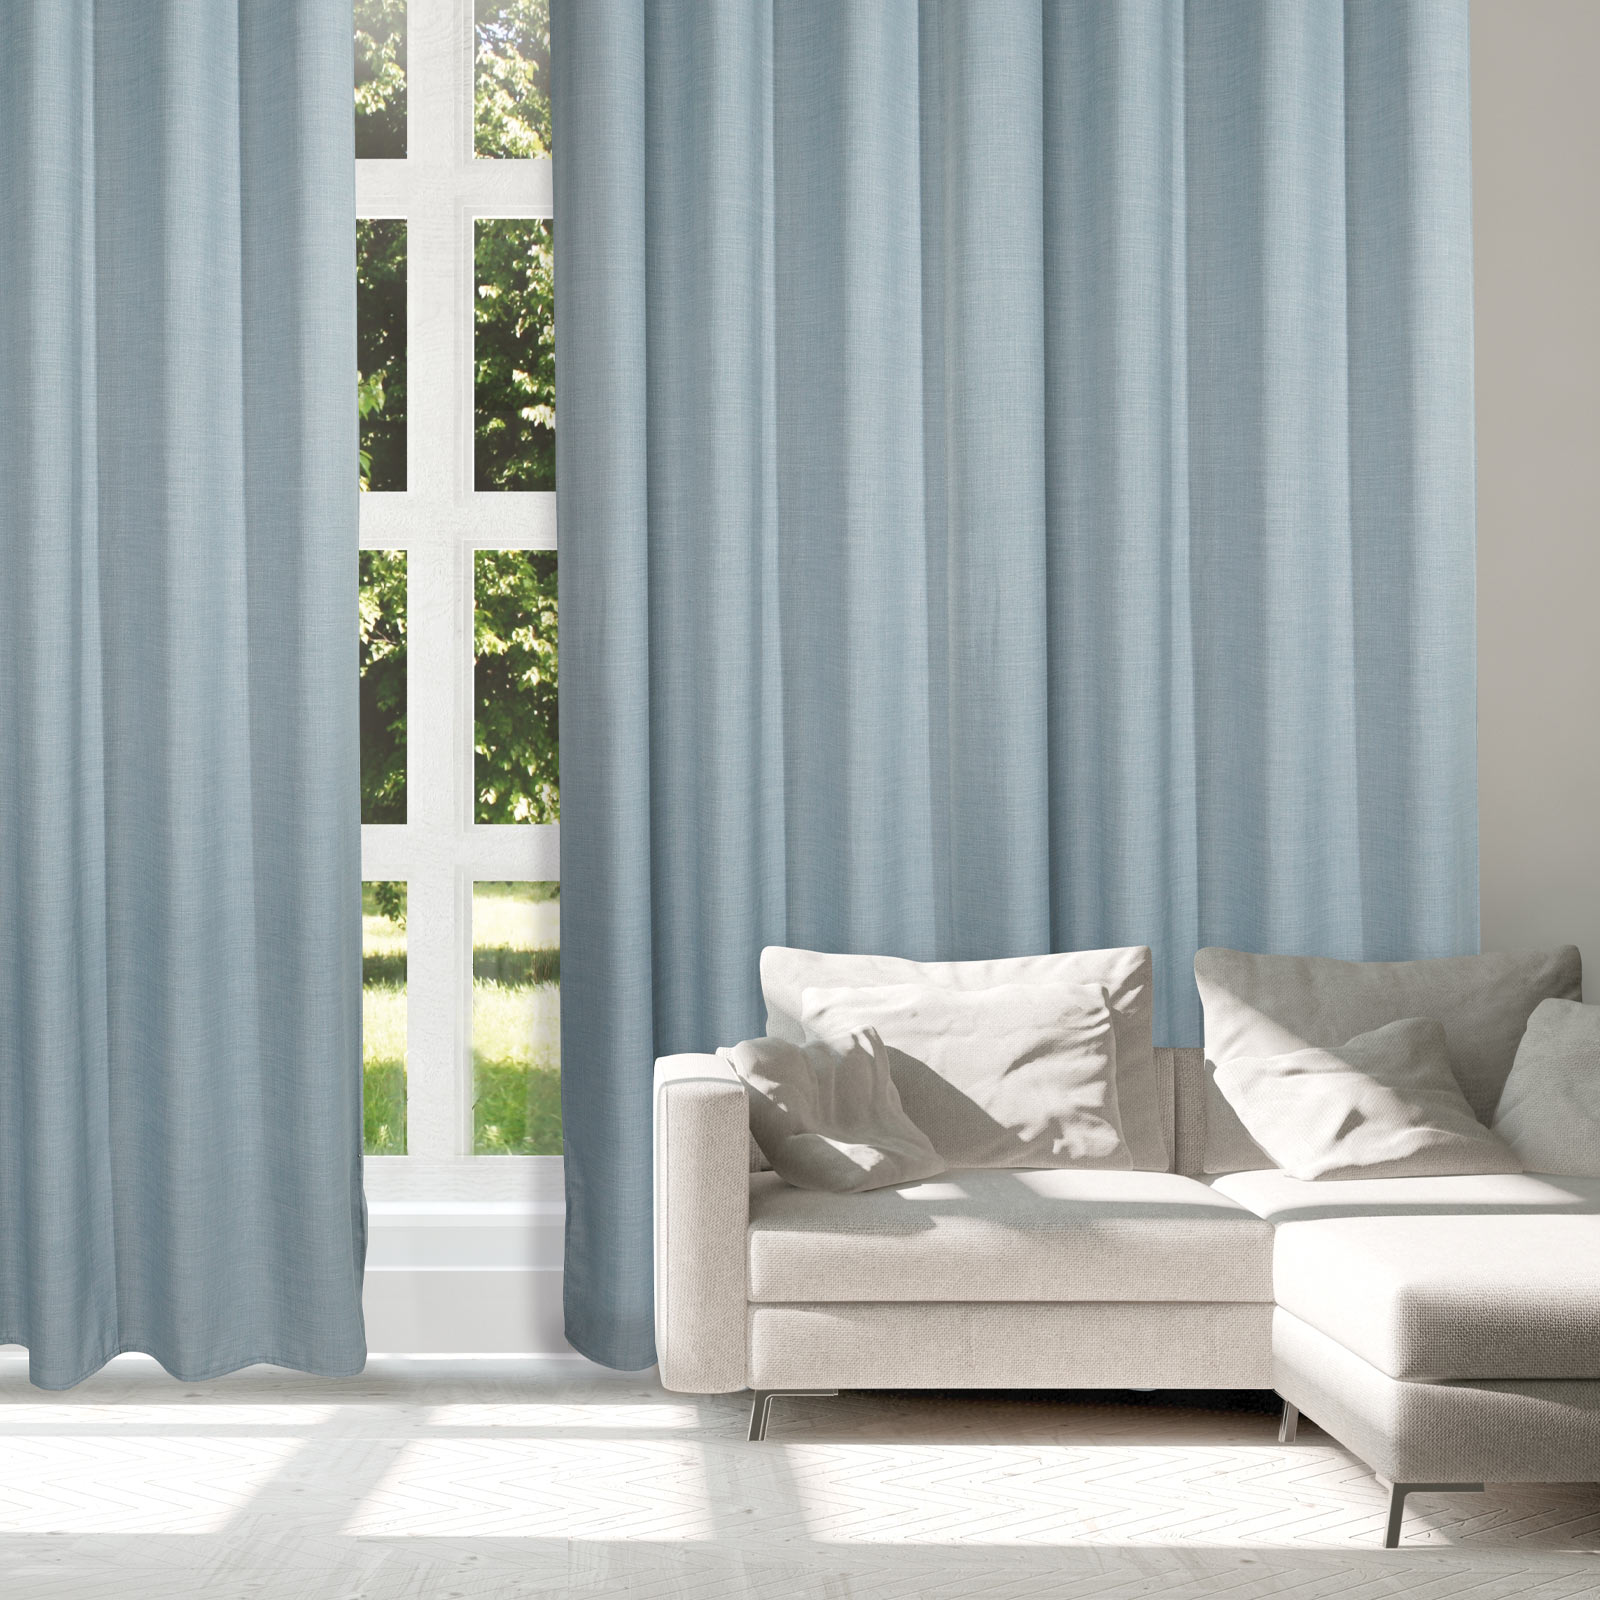 Κουρτίνα Μέτριας Σκίασης Με Τρουκς Polyester 140×270εκ. Curtain Line 2240 Γαλάζιο Das Home (Ύφασμα: Polyester, Χρώμα: Γαλάζιο ) – Das Home – 420142702240